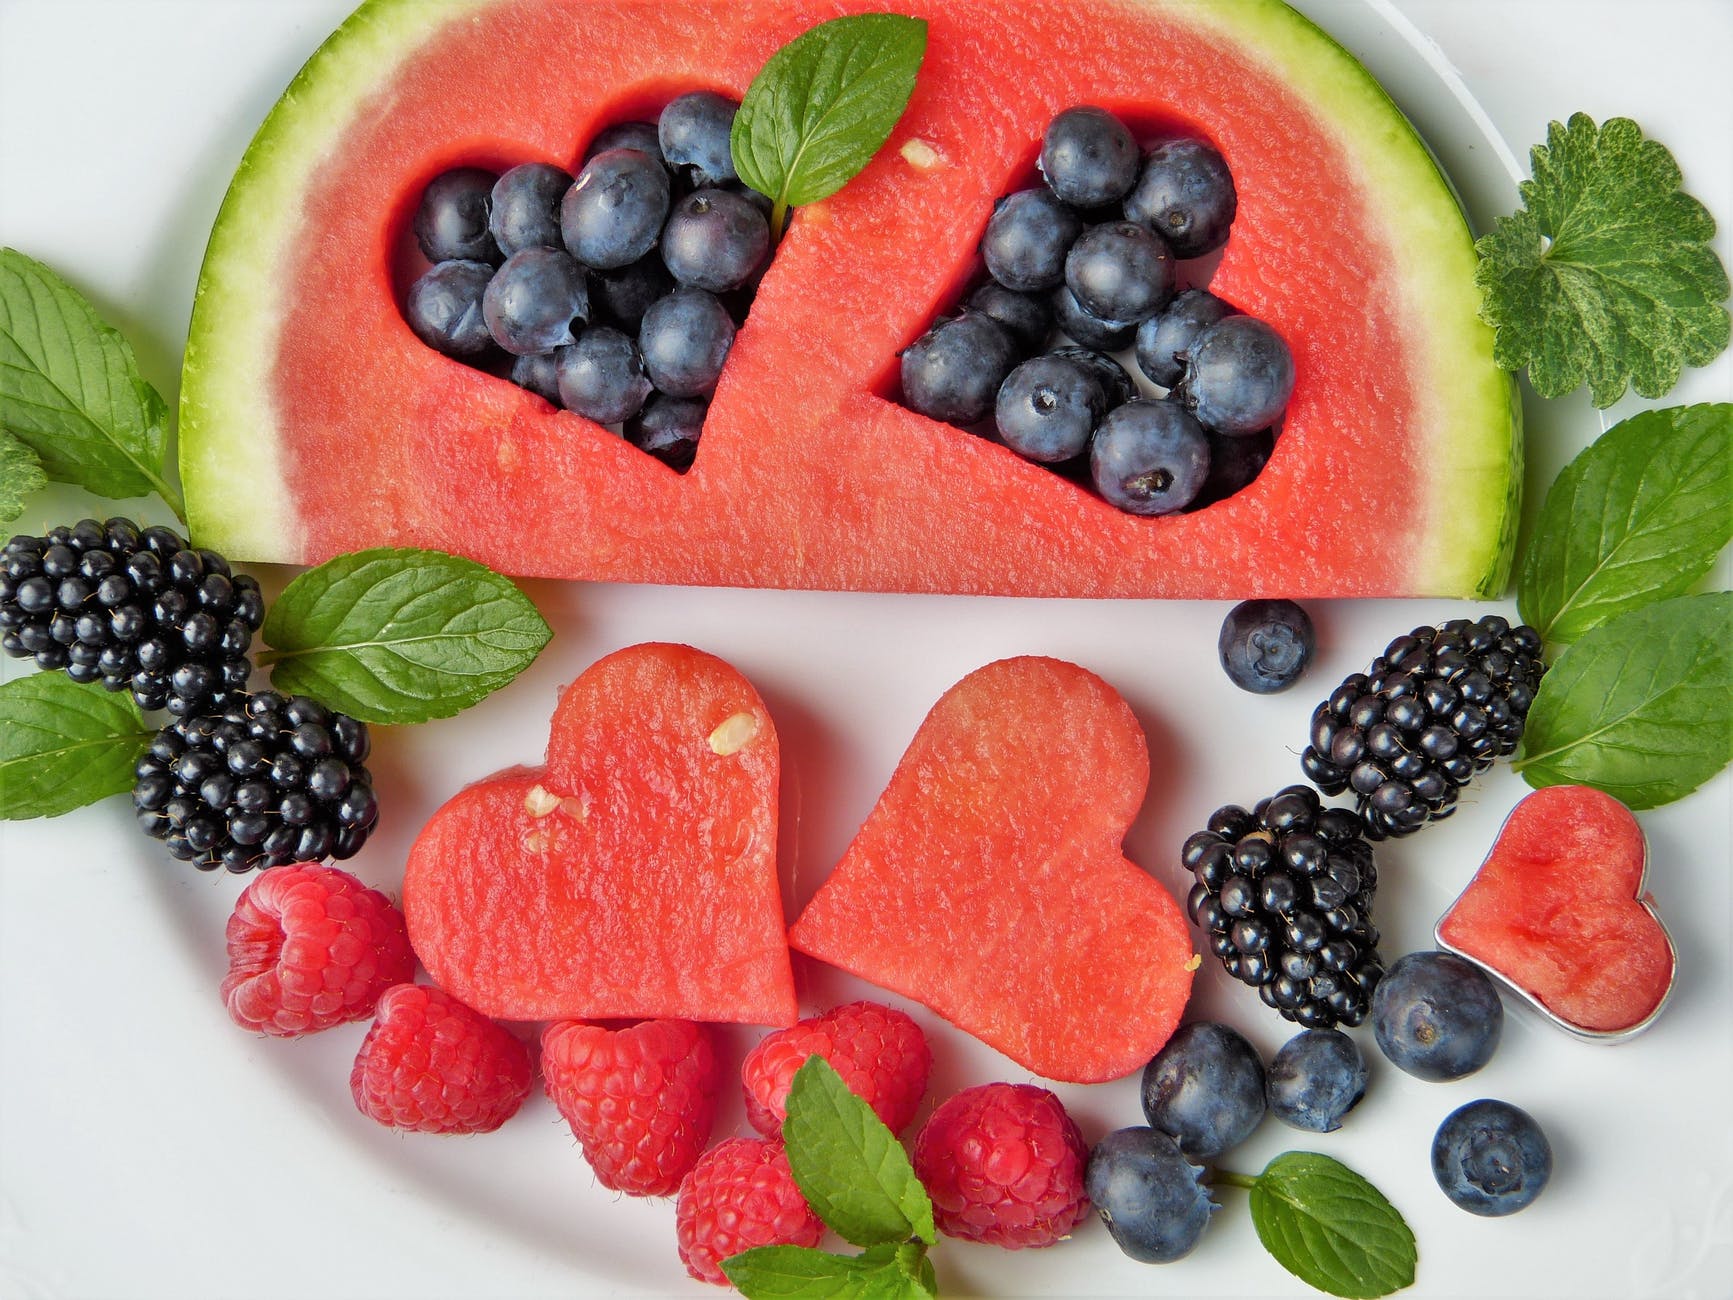 composición de frutas con sandía y berries.